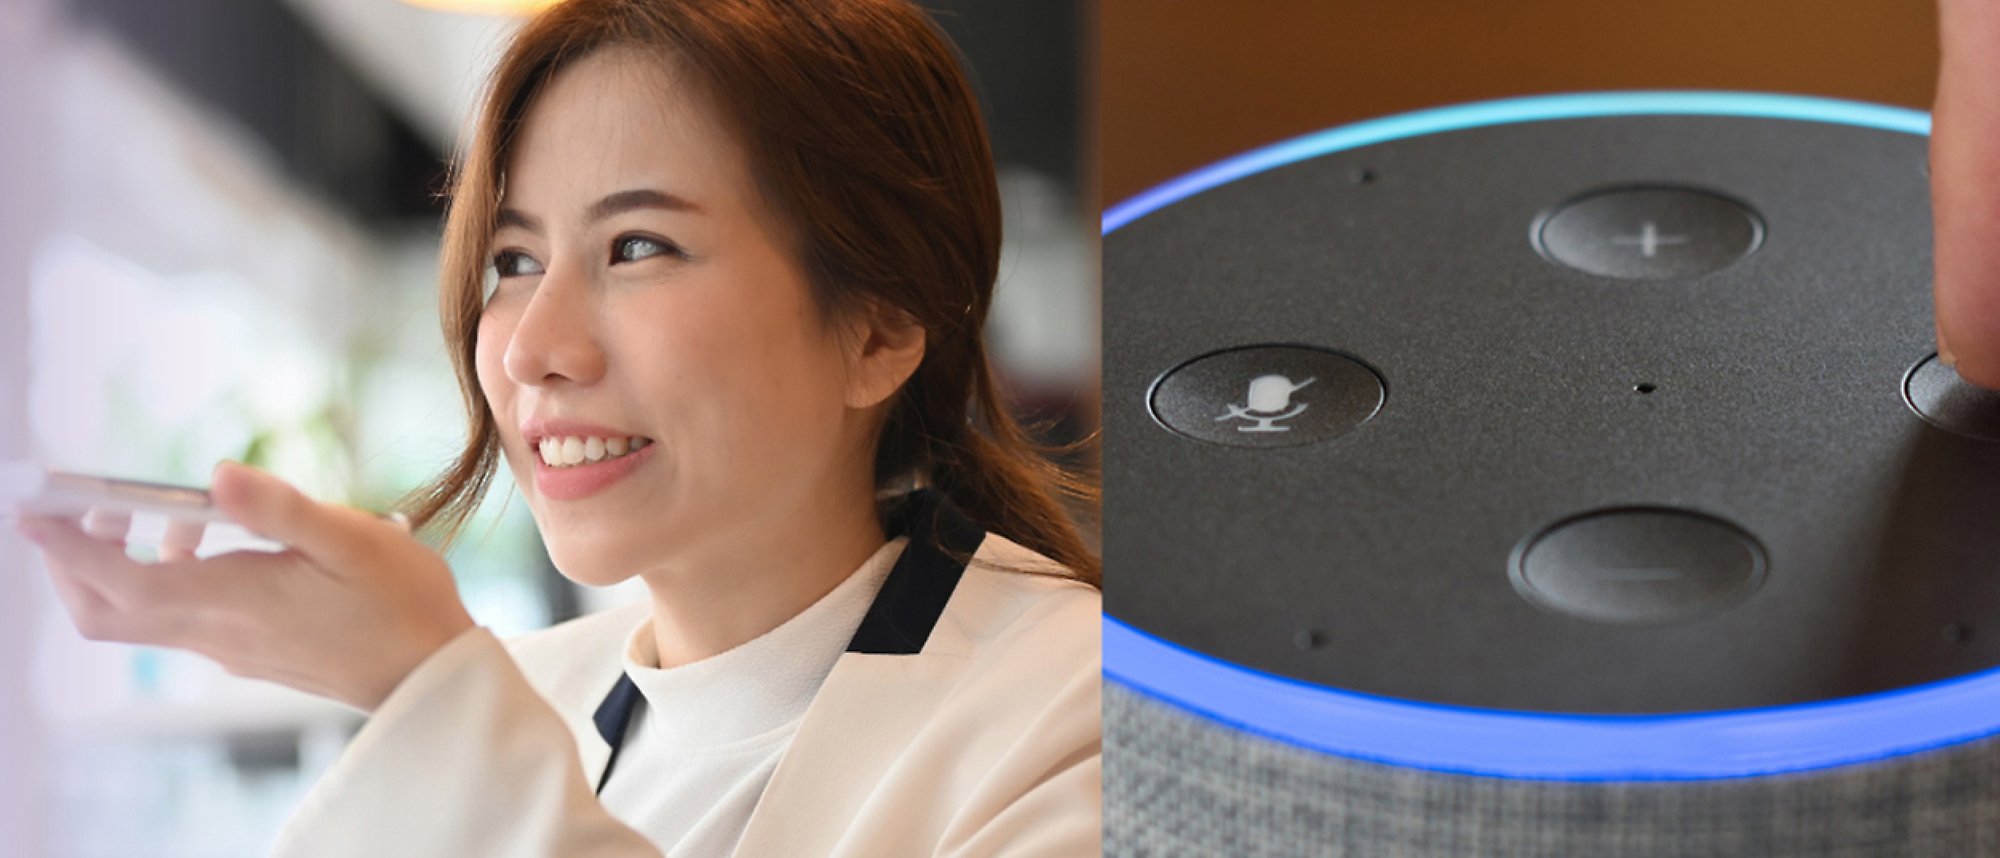 En kvinna som pratar i telefon och en bild av Amazon Alexa med blåljus och ljudkontroller